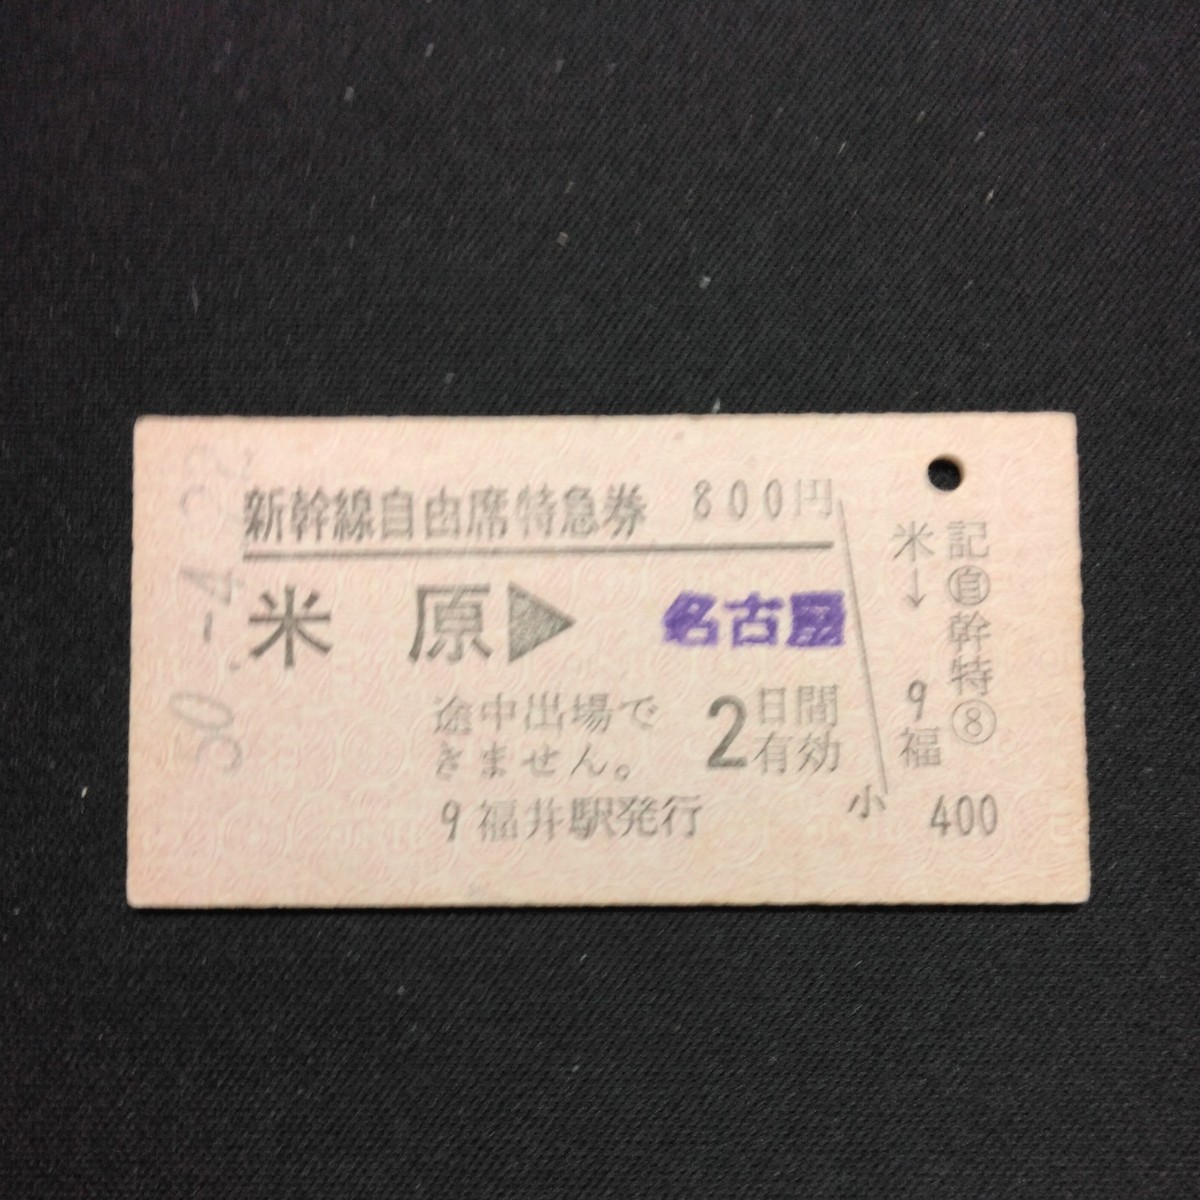 【5944】硬券 A型 新幹線自由席特急券 米原→名古屋_画像1